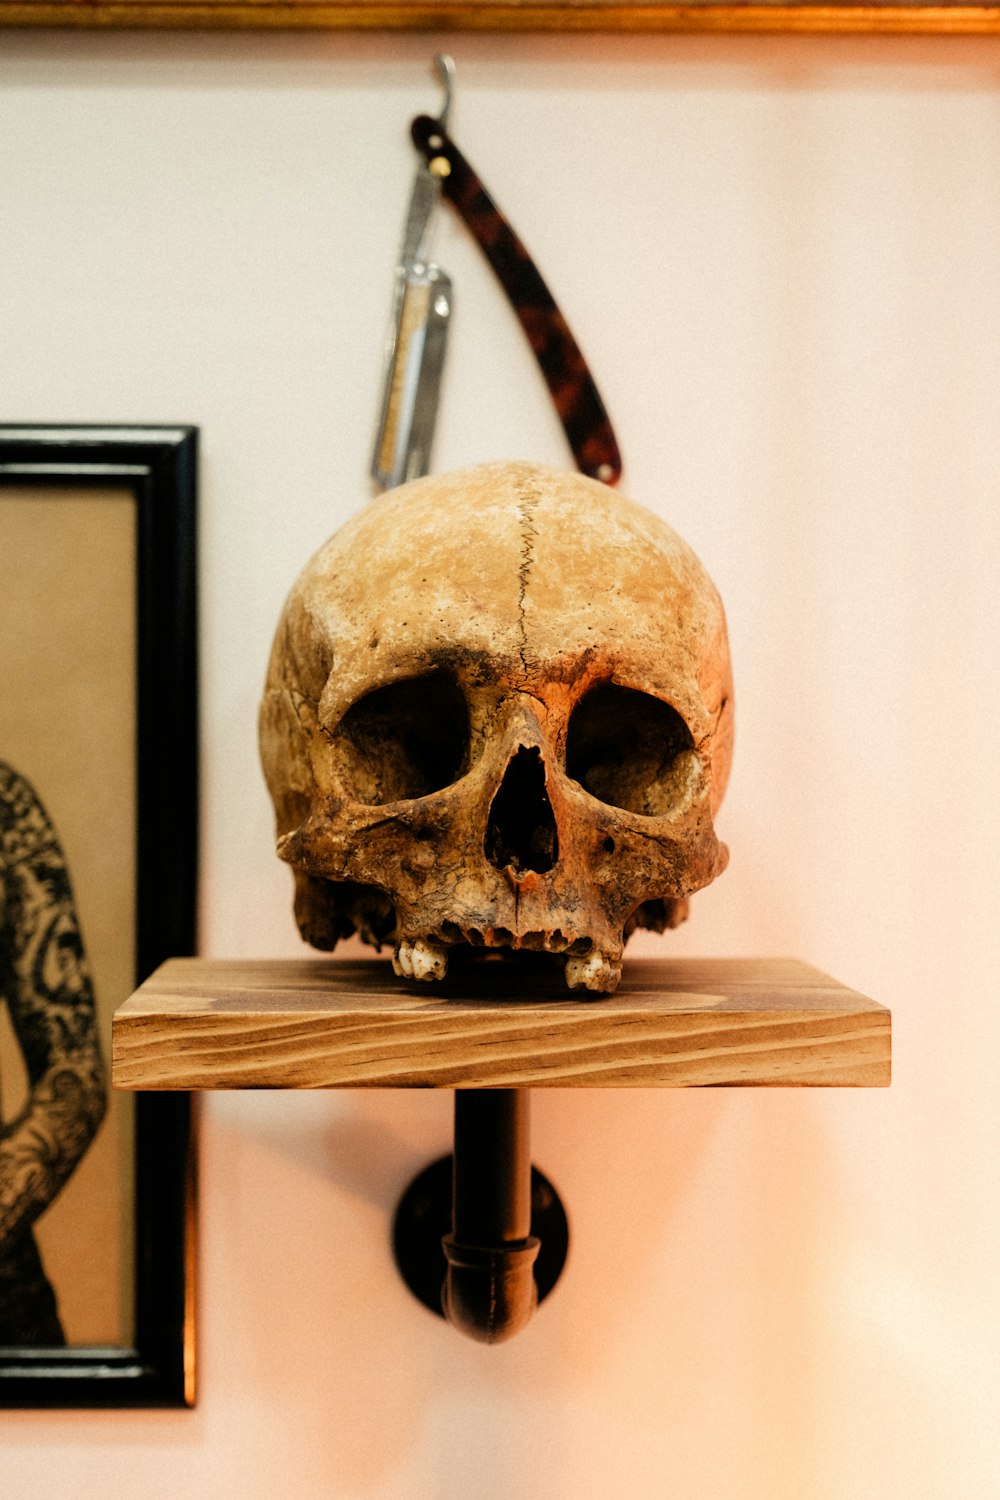 나무 선반 위에 앉아있는 가짜 인간 두개골